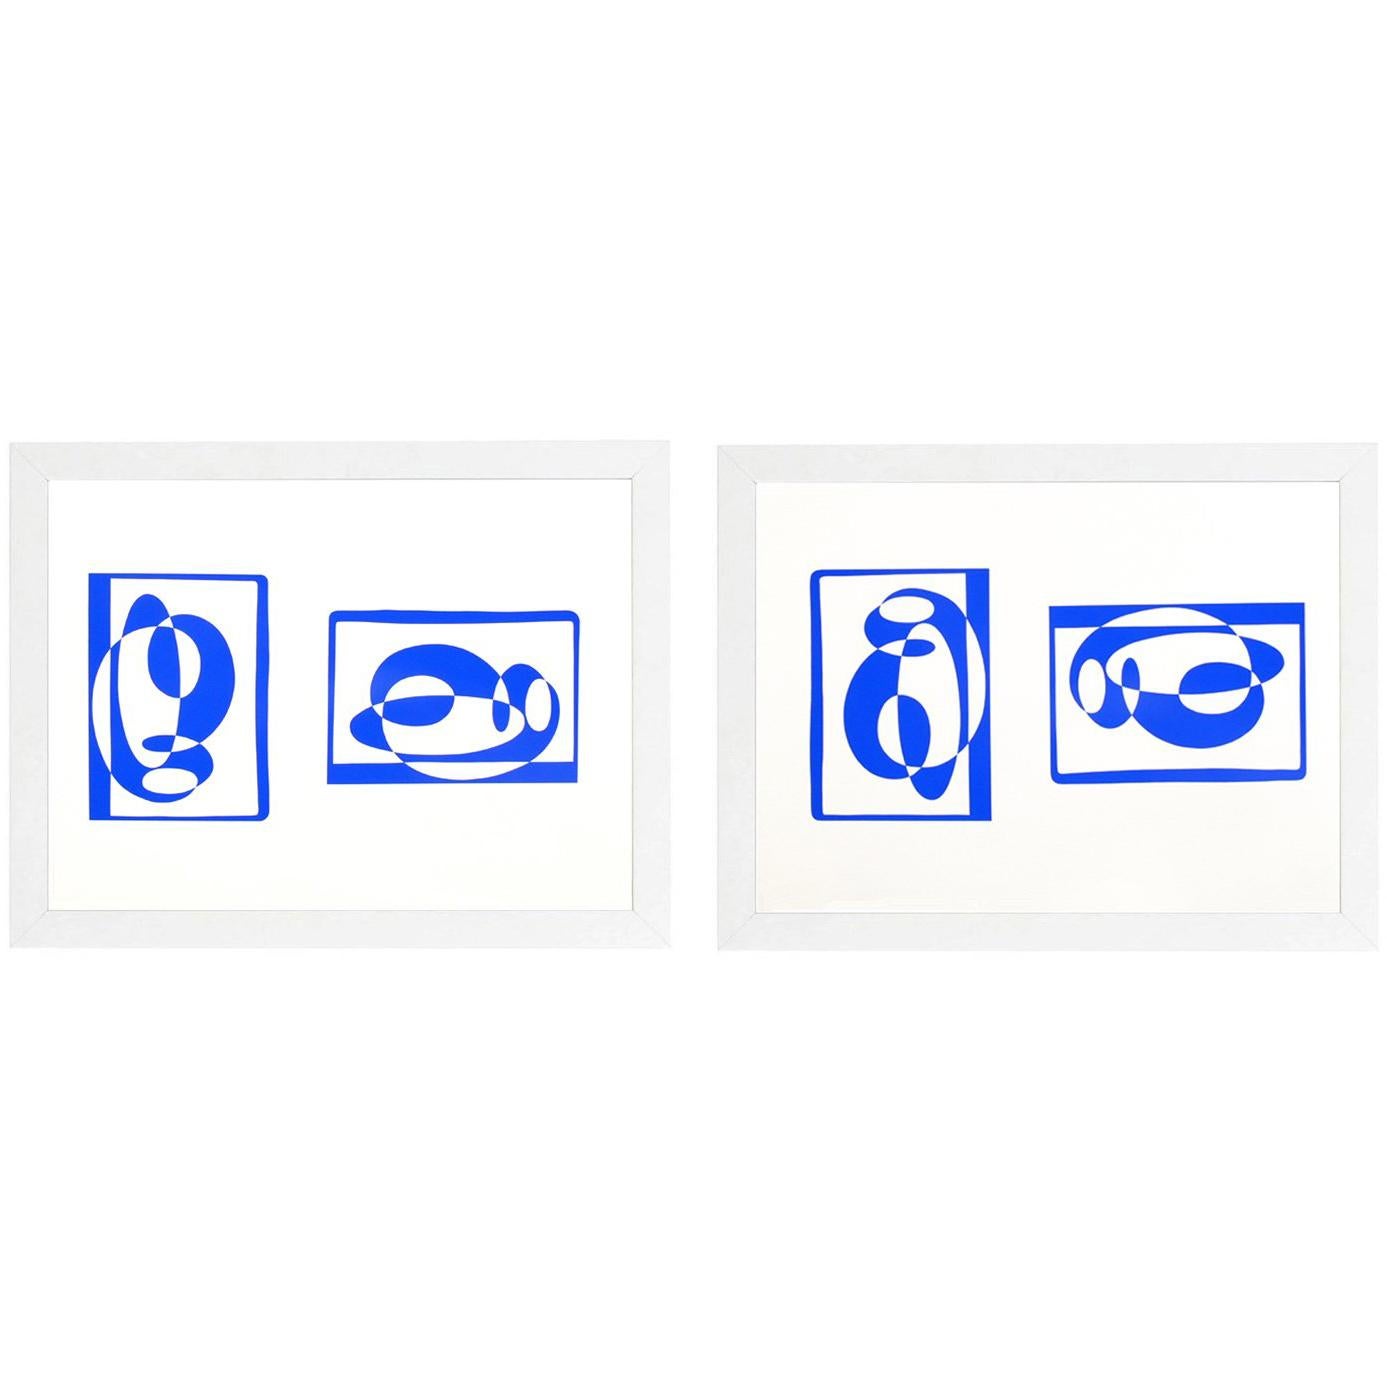 Lithographies abstraites de Josef Albers de la formulation et de l'articulation